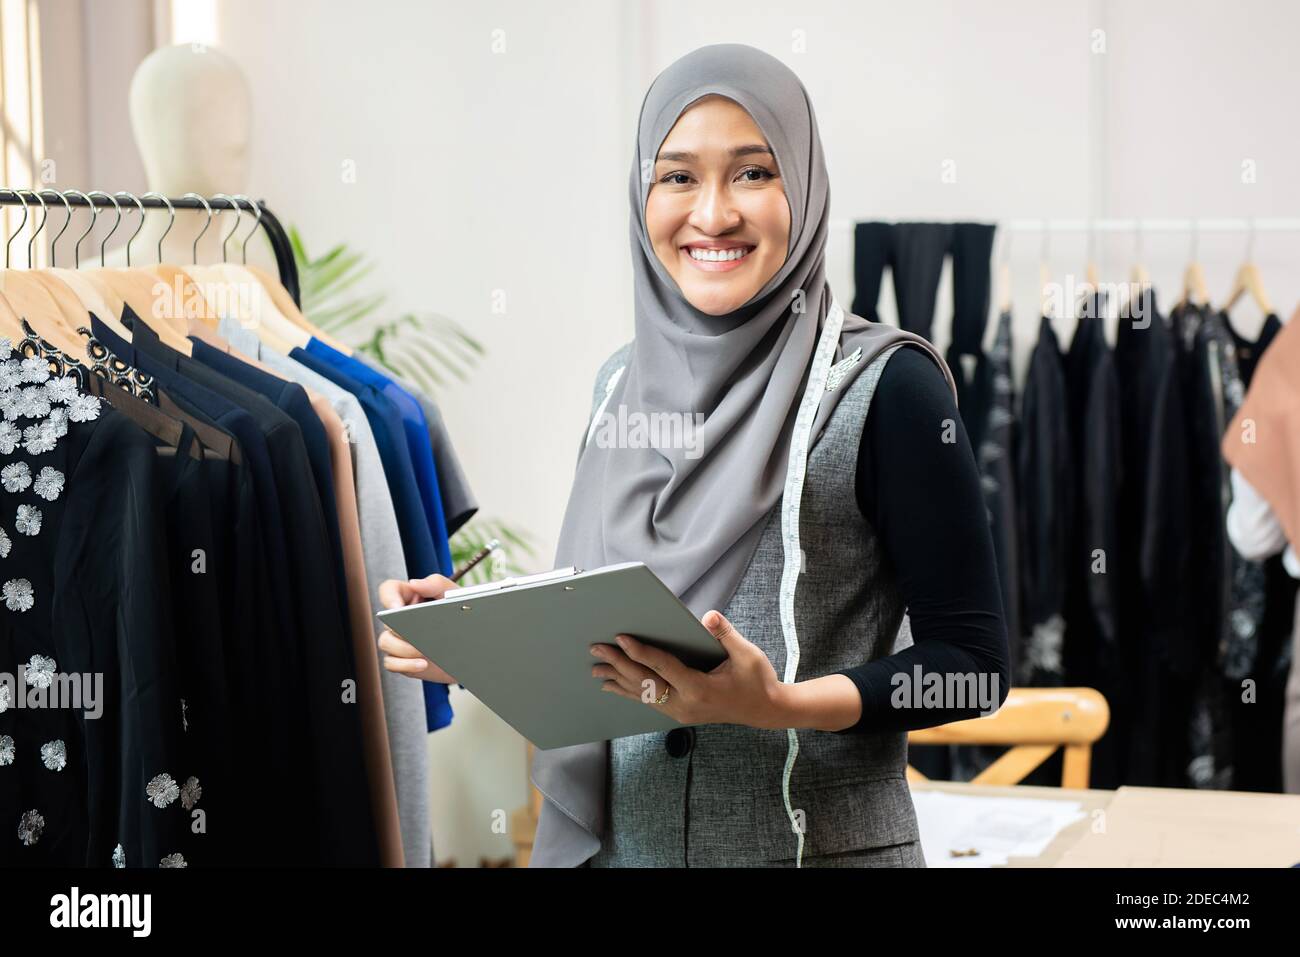 Feliz sonrisa mujer musulmana asiática diseñadora como un negocio de inicio propietario trabajando en su tienda de sastre Foto de stock